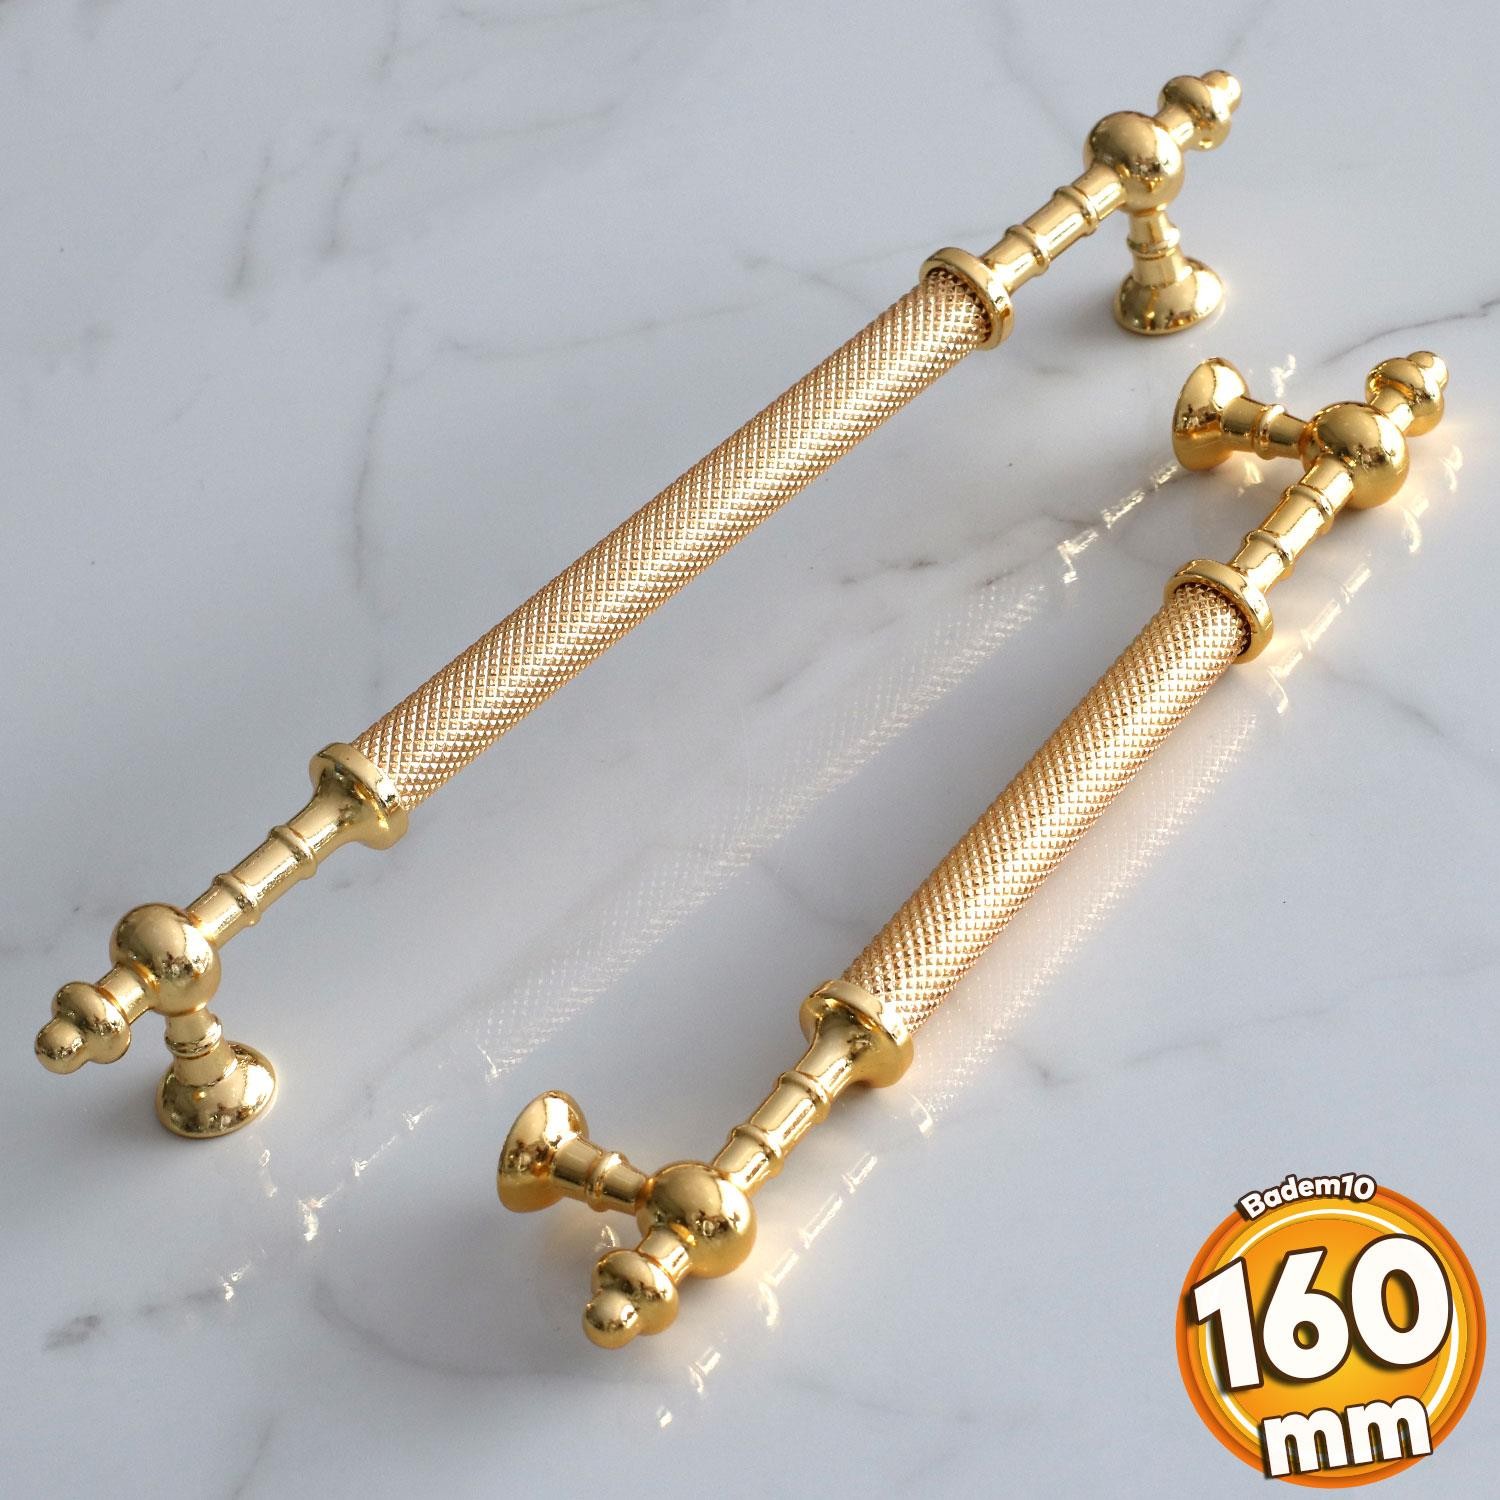 Ladin Altın Gold Metal Kulp 160 mm-16 cm Mobilya Mutfak Çekmece Dolabı Dolap Kapak Kulpları Kulbu